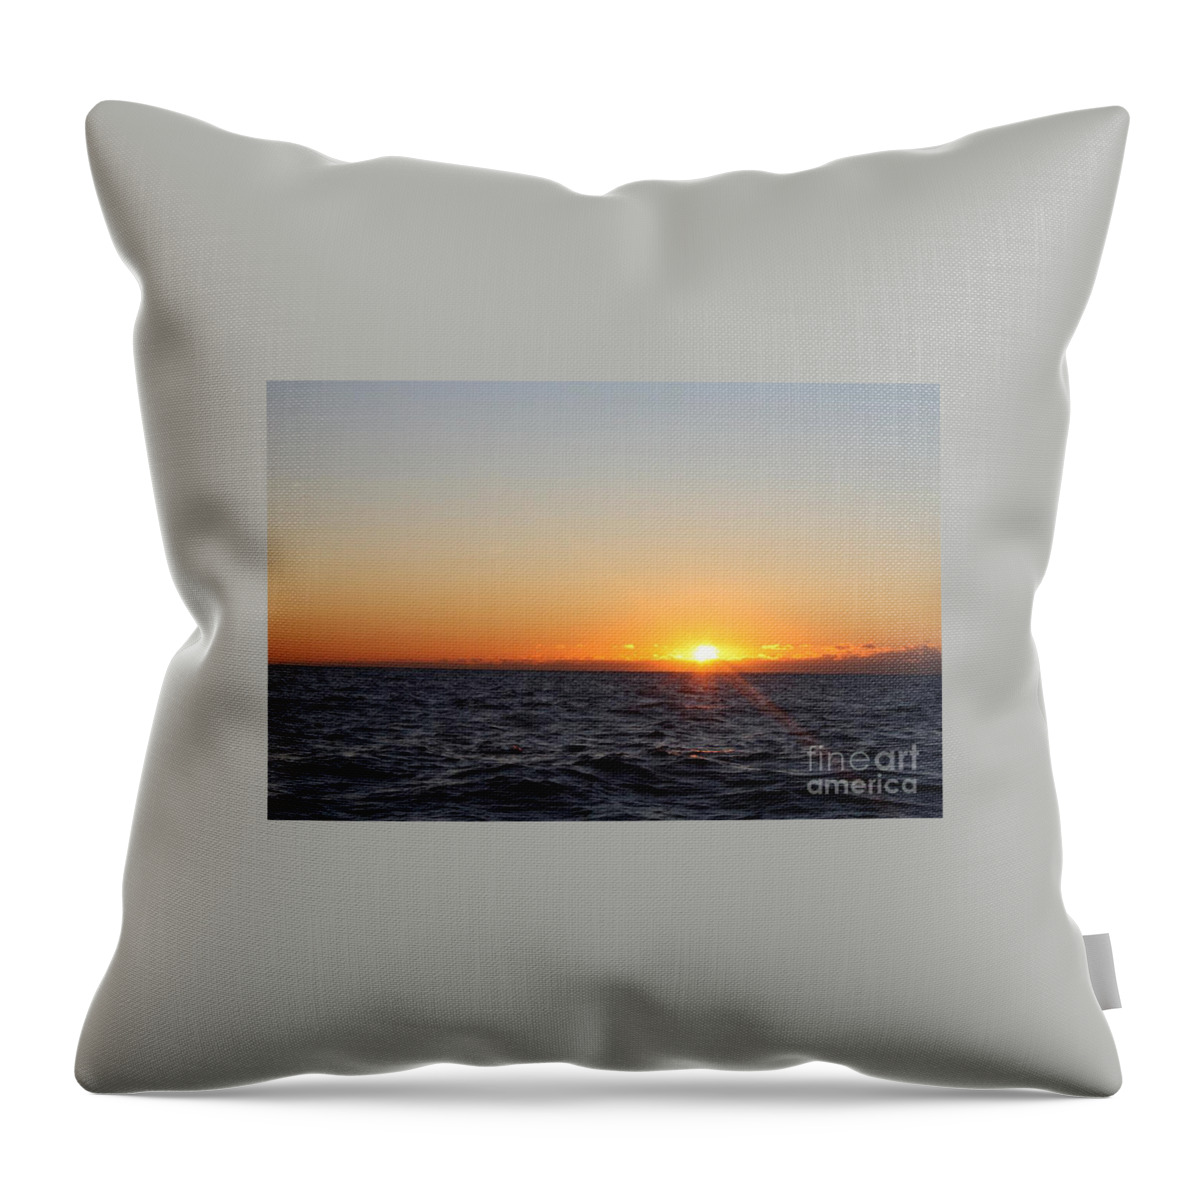 Winter Sunrise Over The Ocean Throw Pillow featuring the photograph Winter Sunrise Over The Ocean by John Telfer